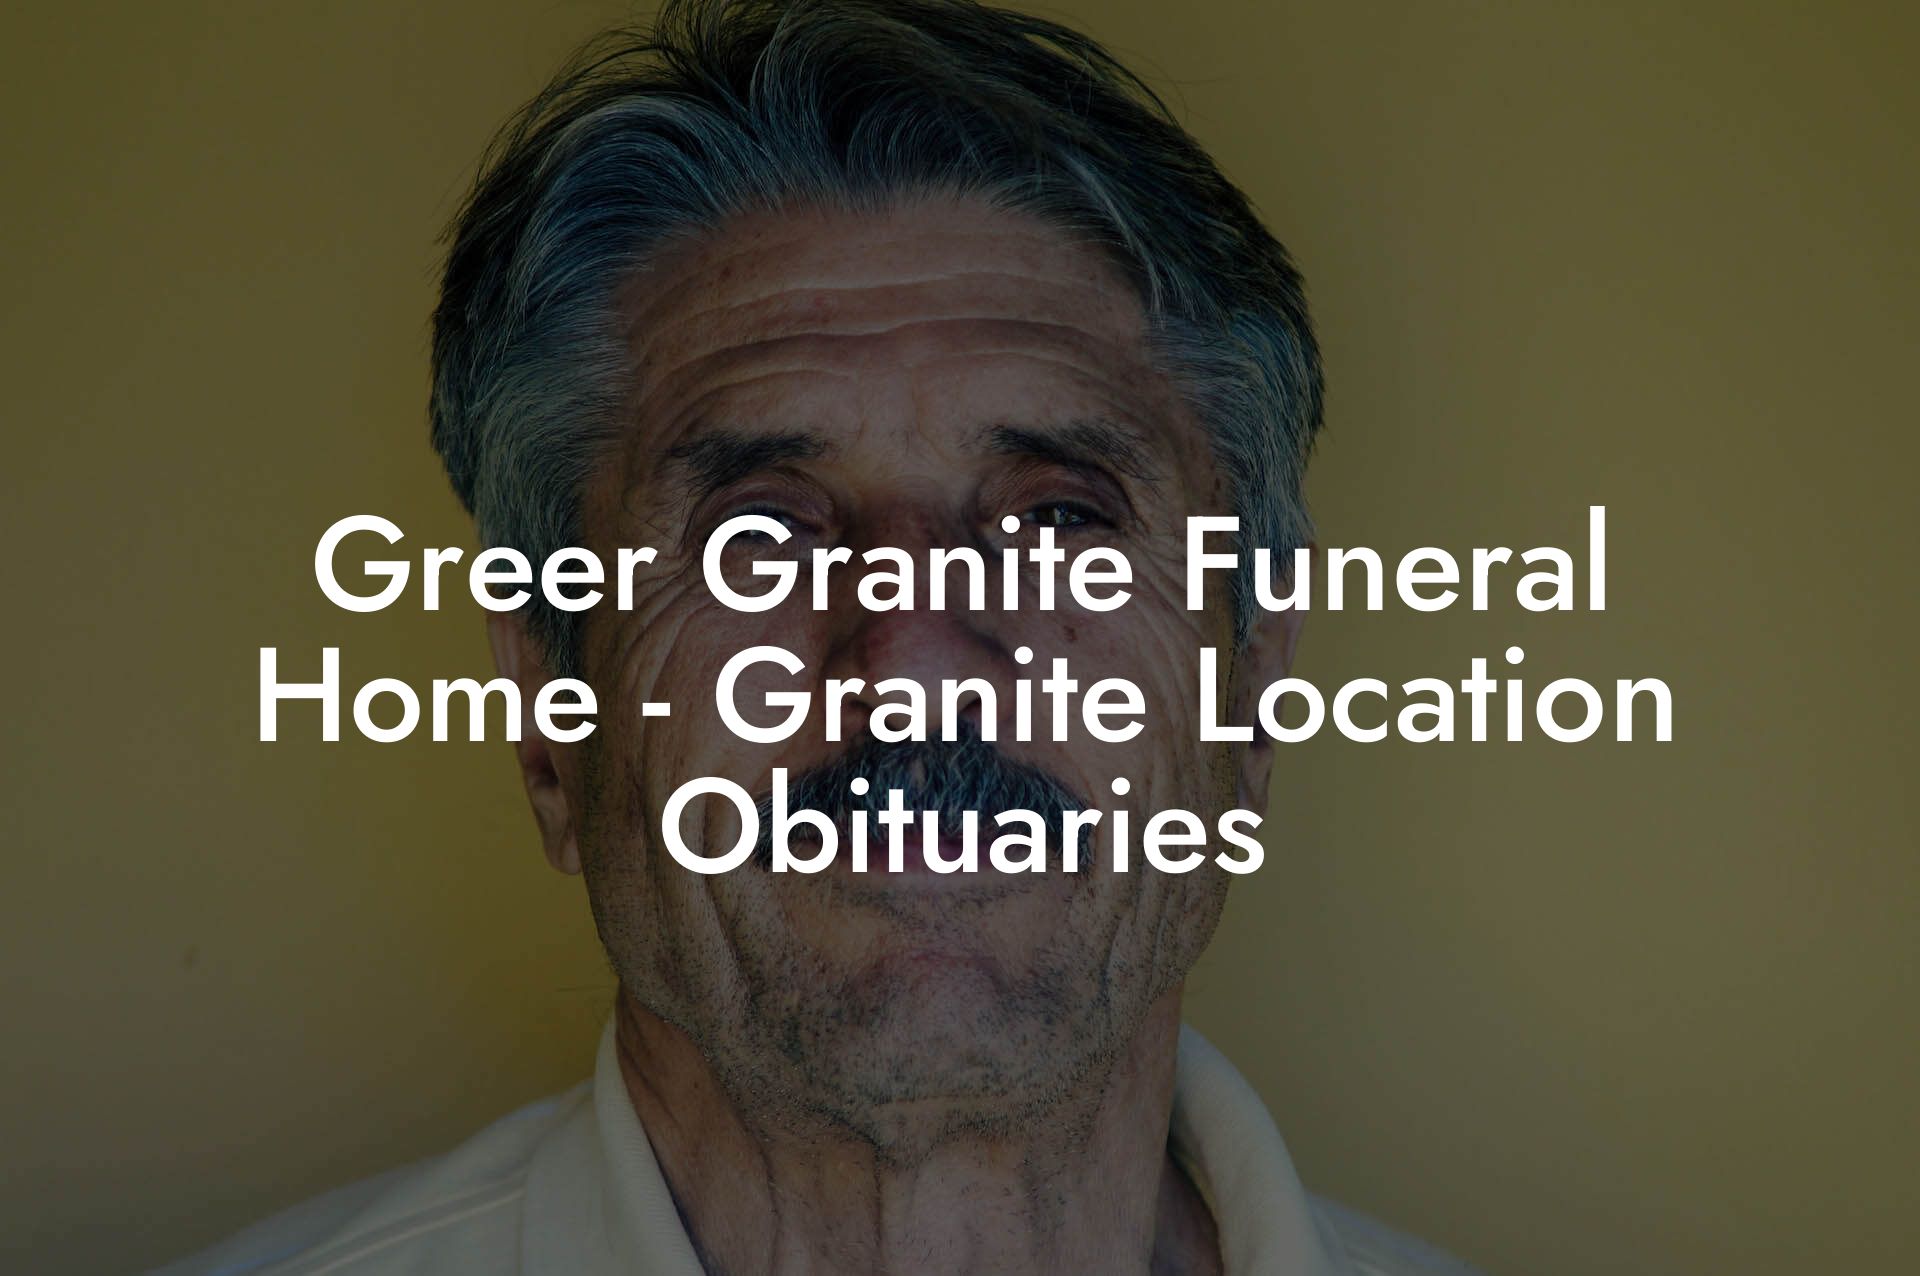 Greer Granite Funeral Home - Granite Location Obituaries